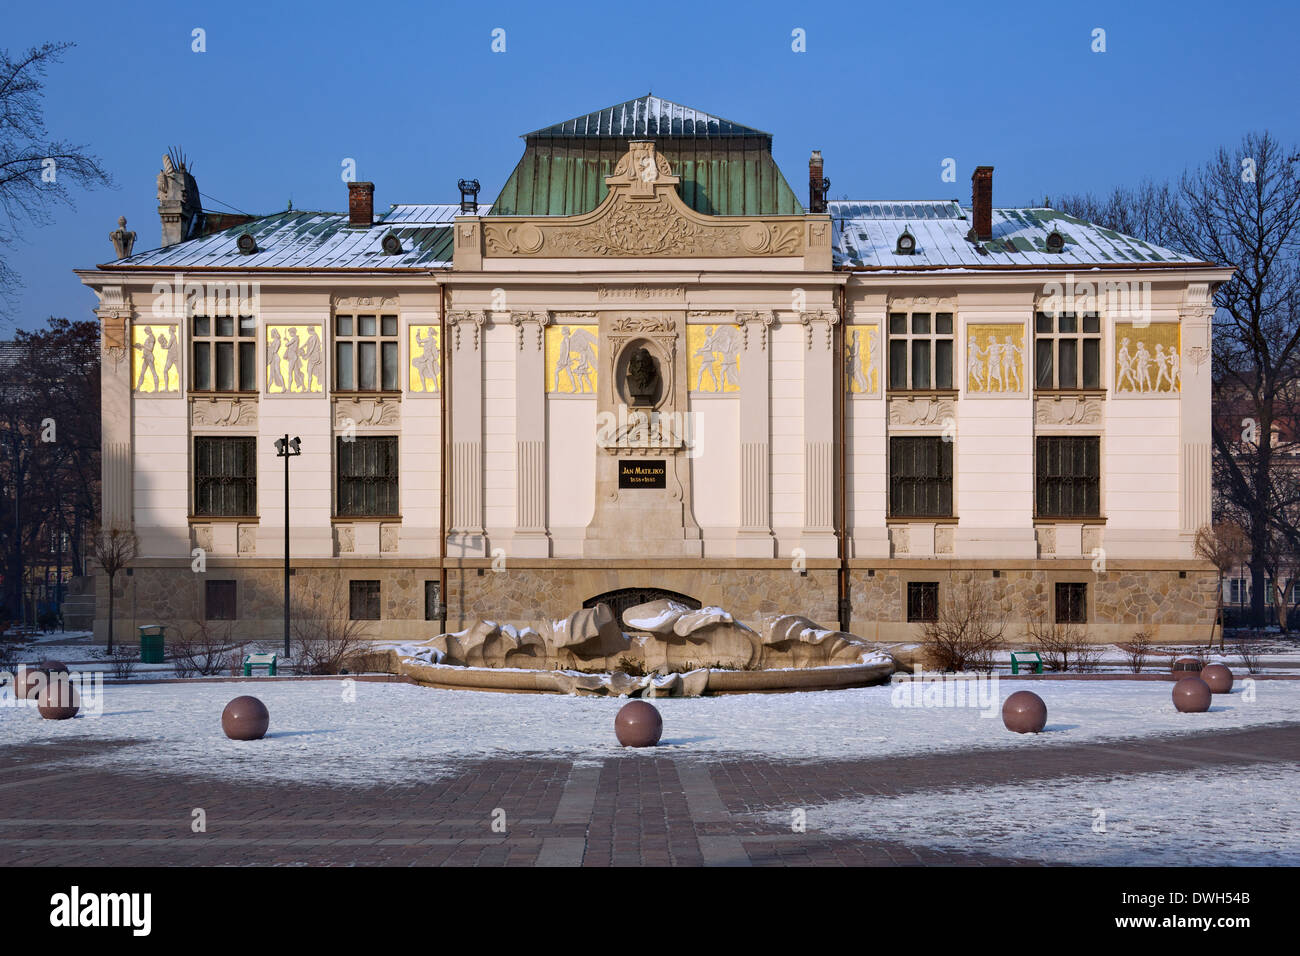 Der Kunstpalast Gebäude in der Stadt Krakau in Polen. Stockfoto